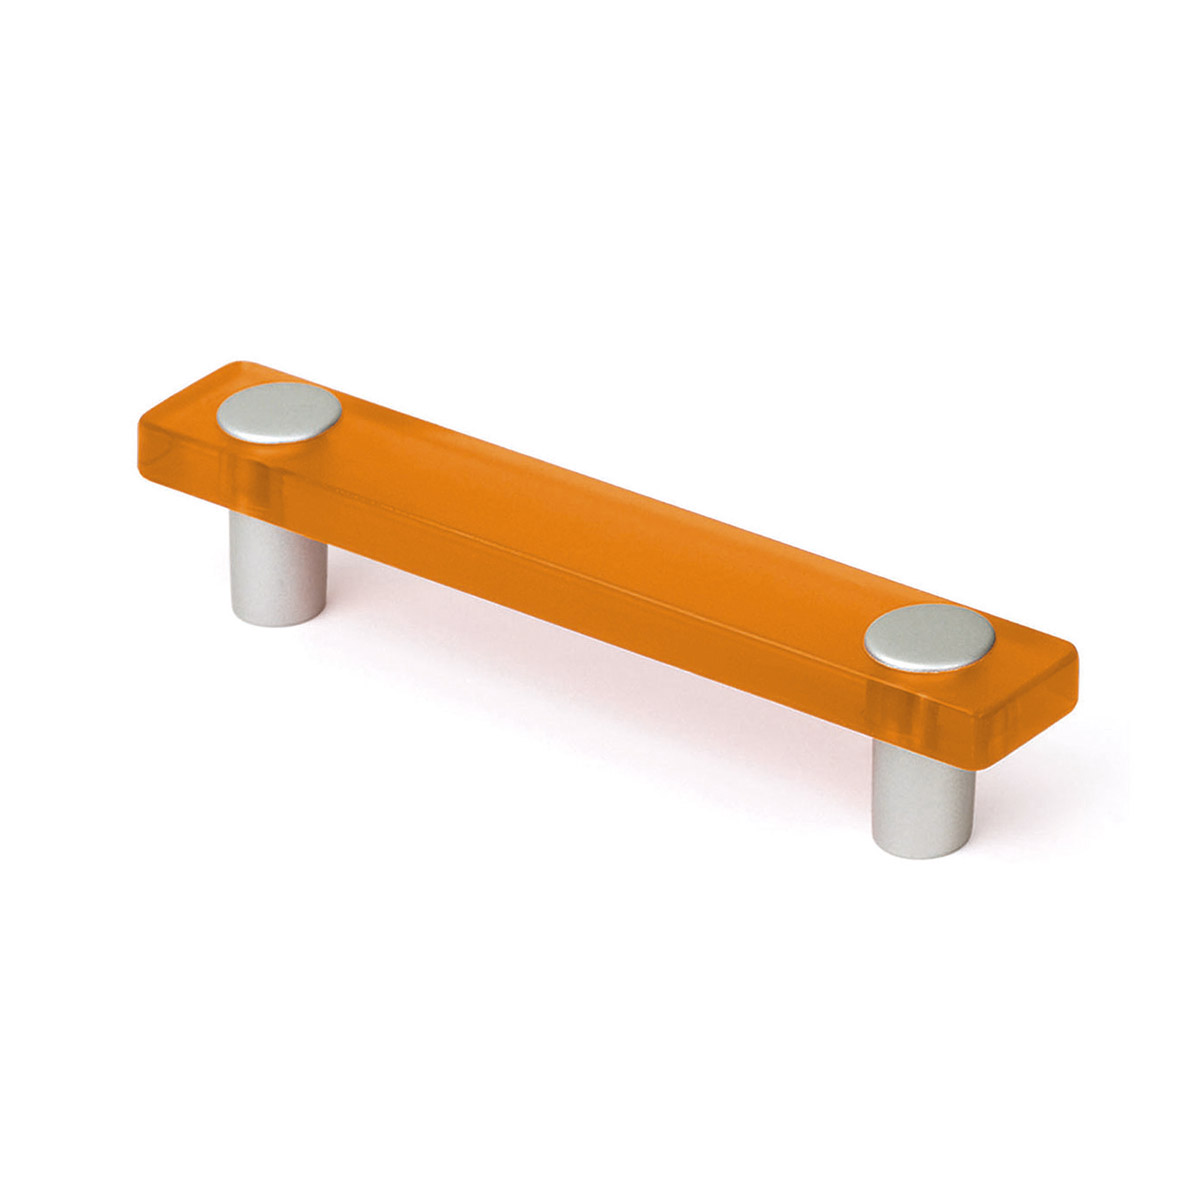 Poignée en plastique avec finition orange, dimensions: 127x20x27mm Inserts: 96mm